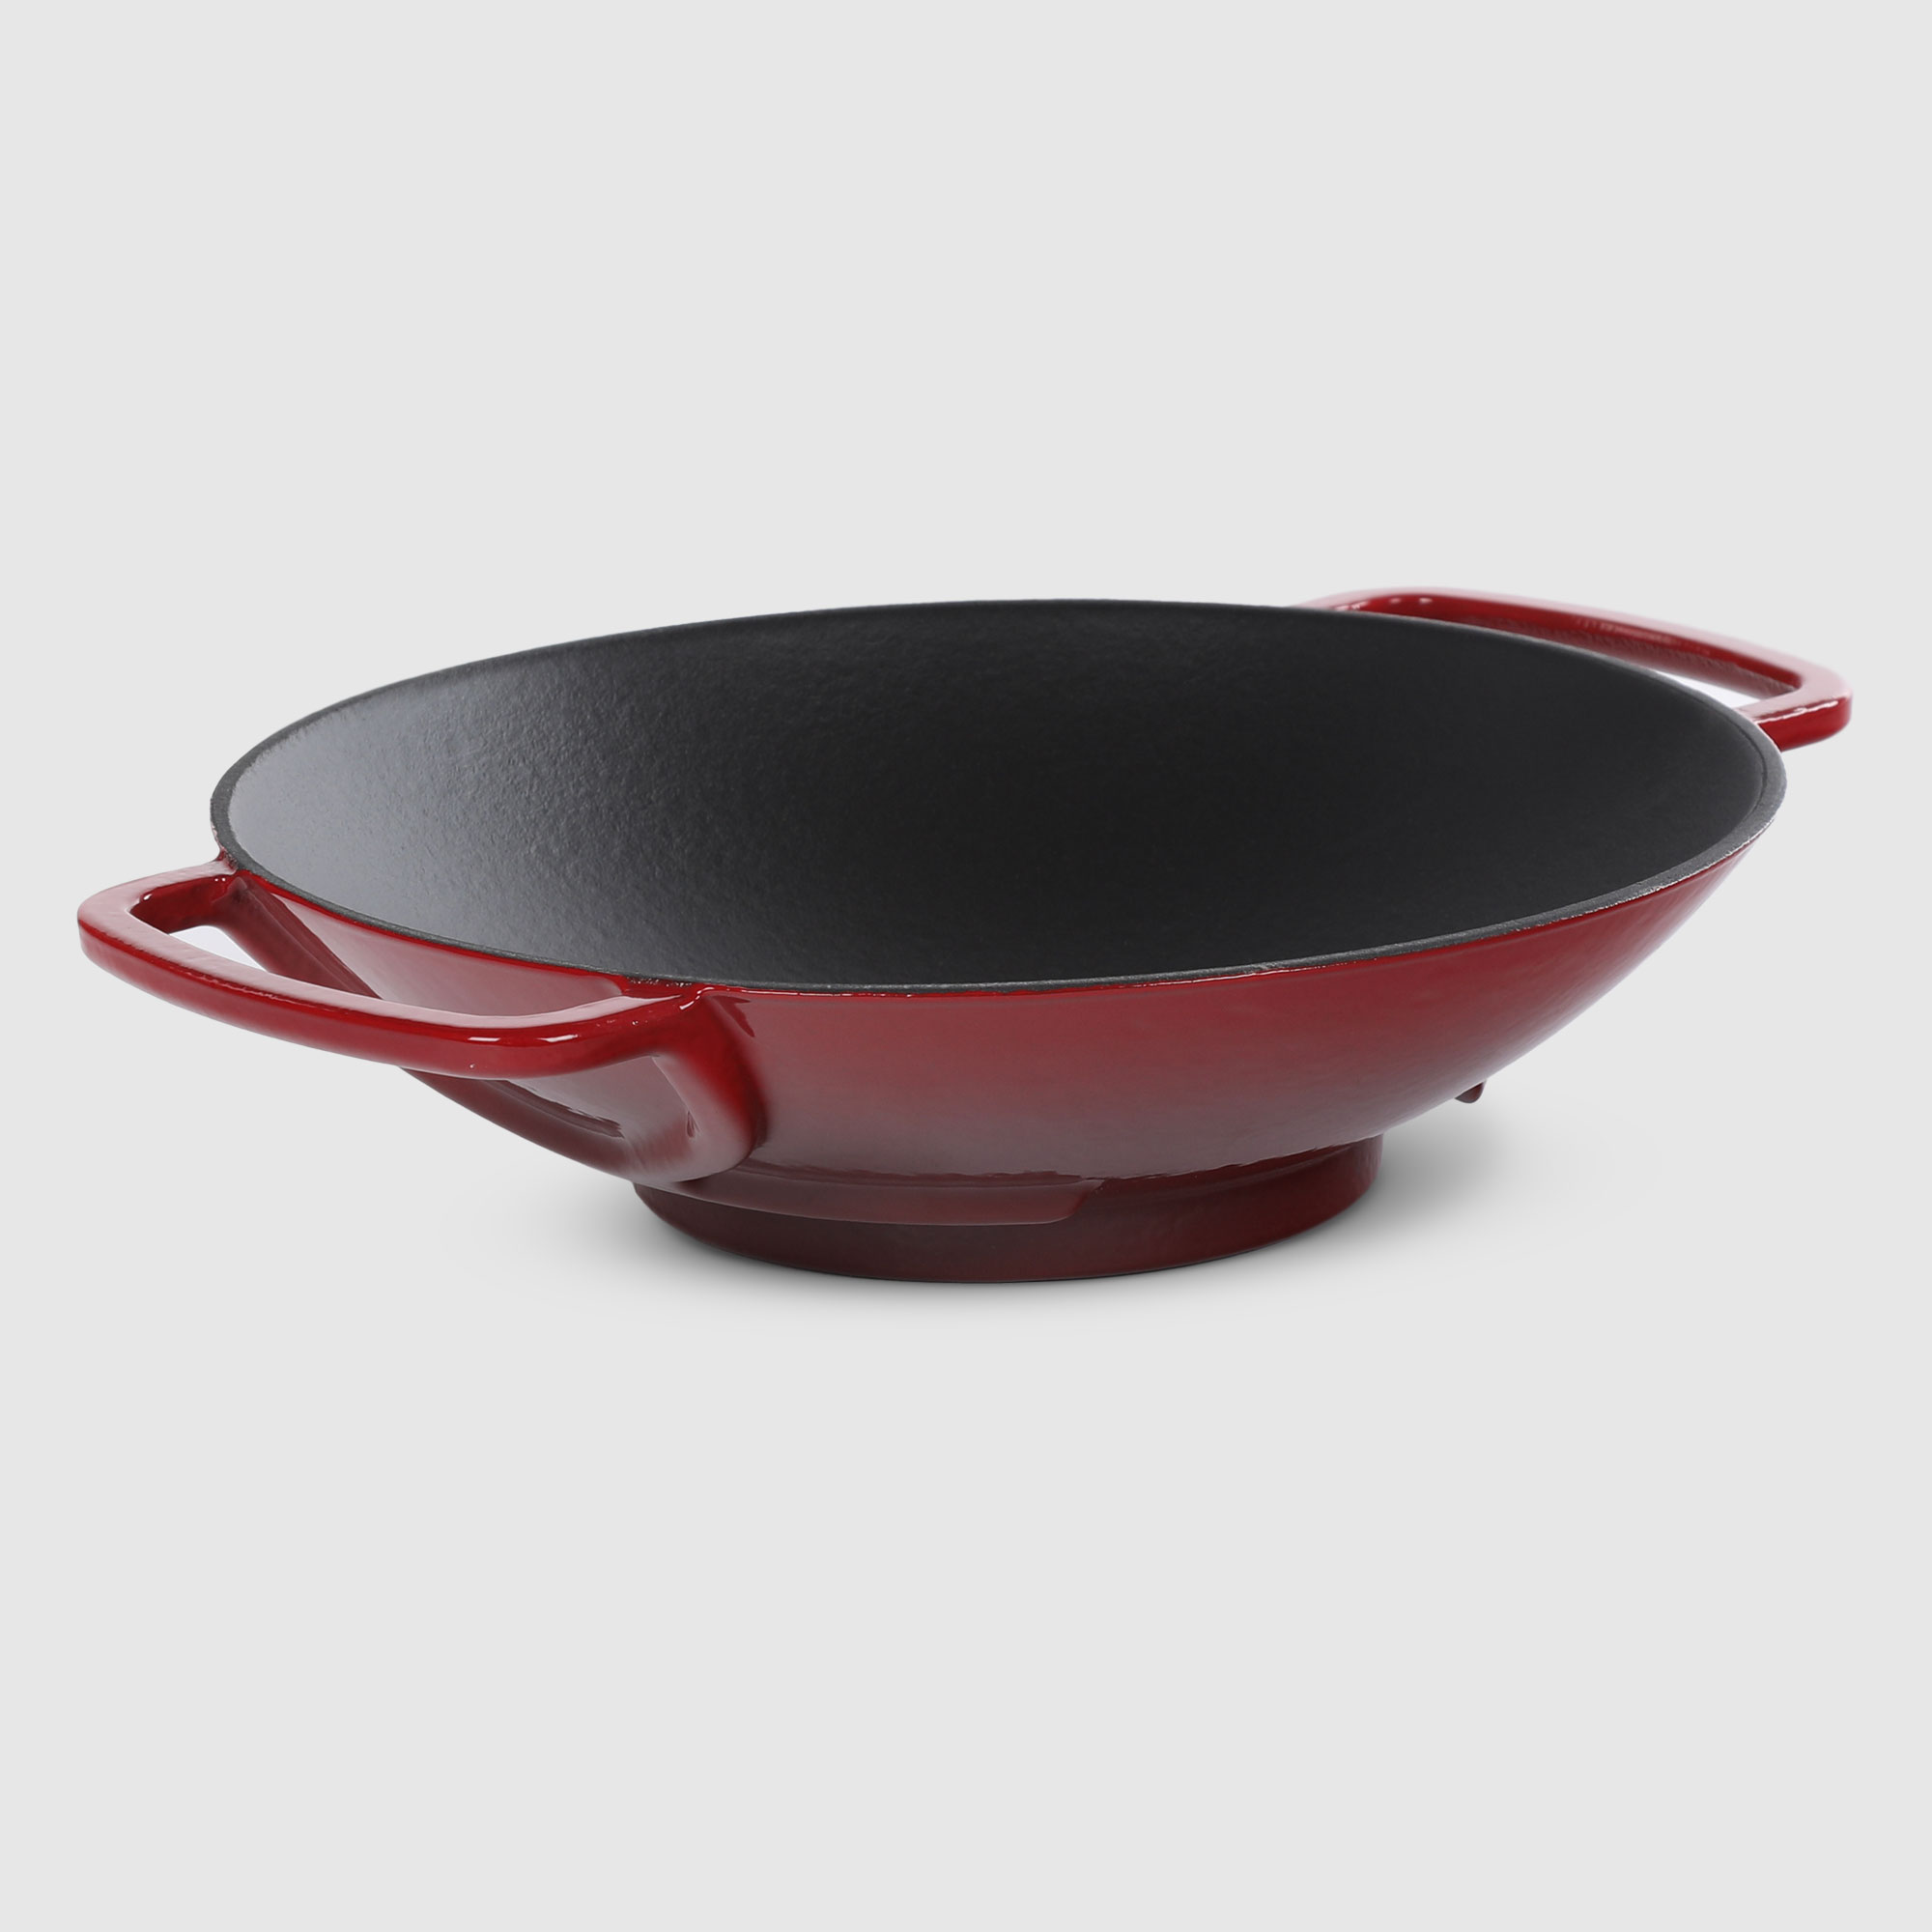 Сковорода Surel wok красная 28 см сковорода surel hexagonal оранжевая 28 см